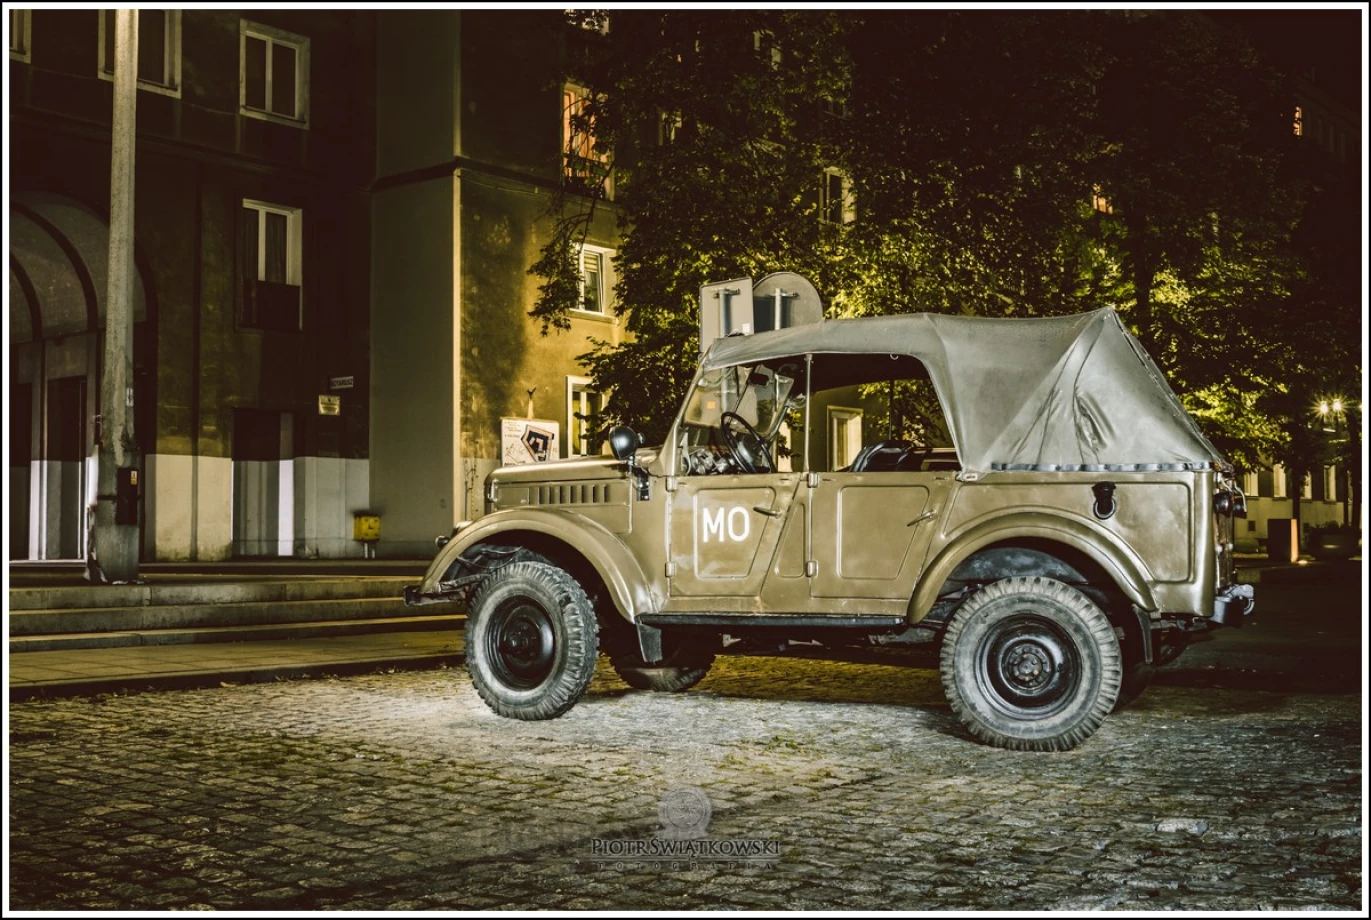 fotograf krakow piotr-swiatkowski-fotografia portfolio zdjecia samochodow motorow motoryzacja